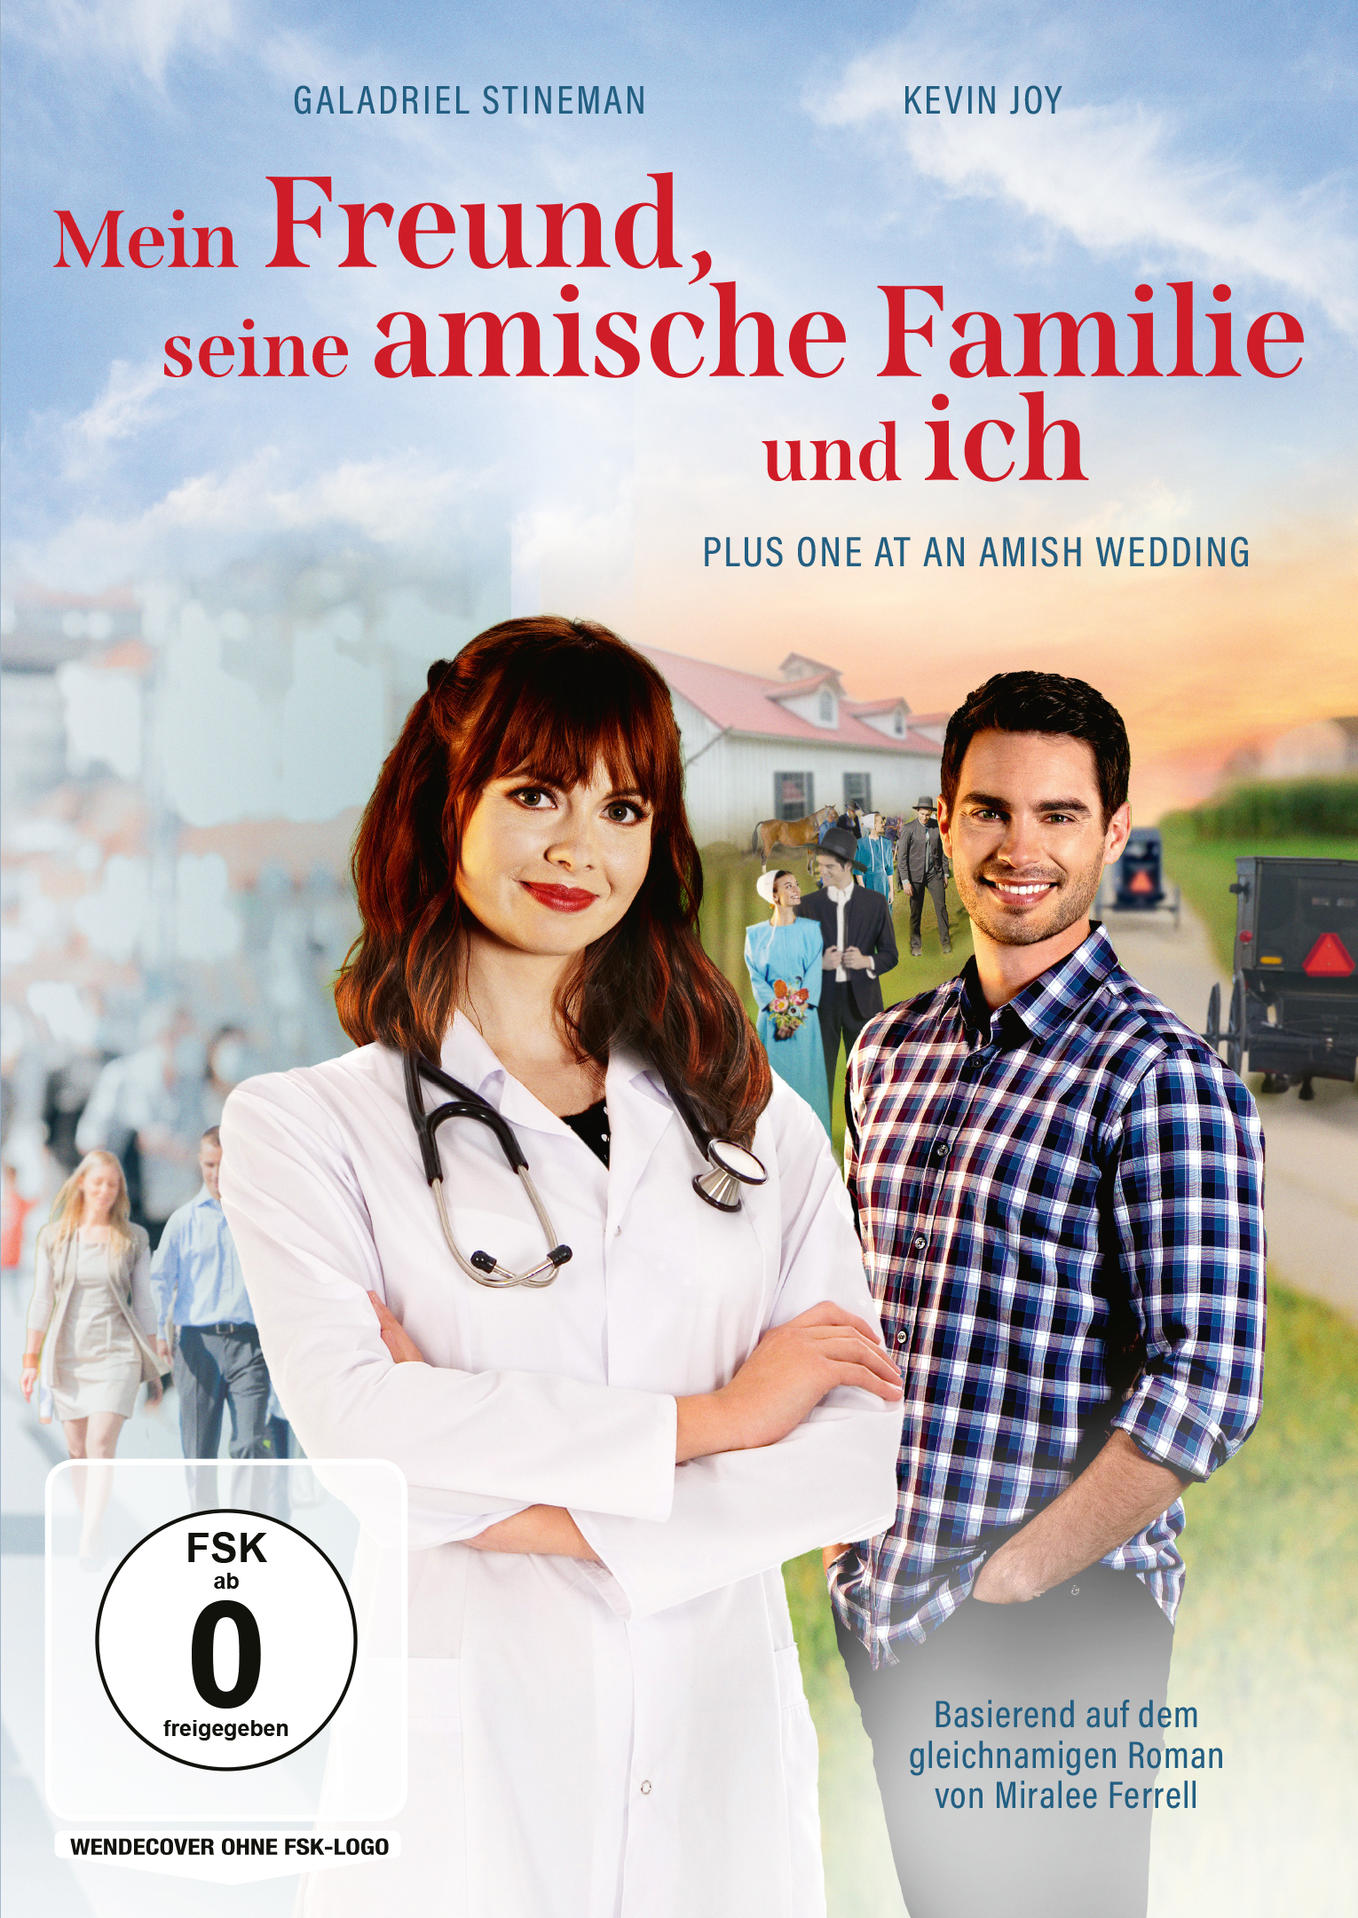 Mein Freund, - Wedding DVD at ich an Plus One seine amische Familie Amish und